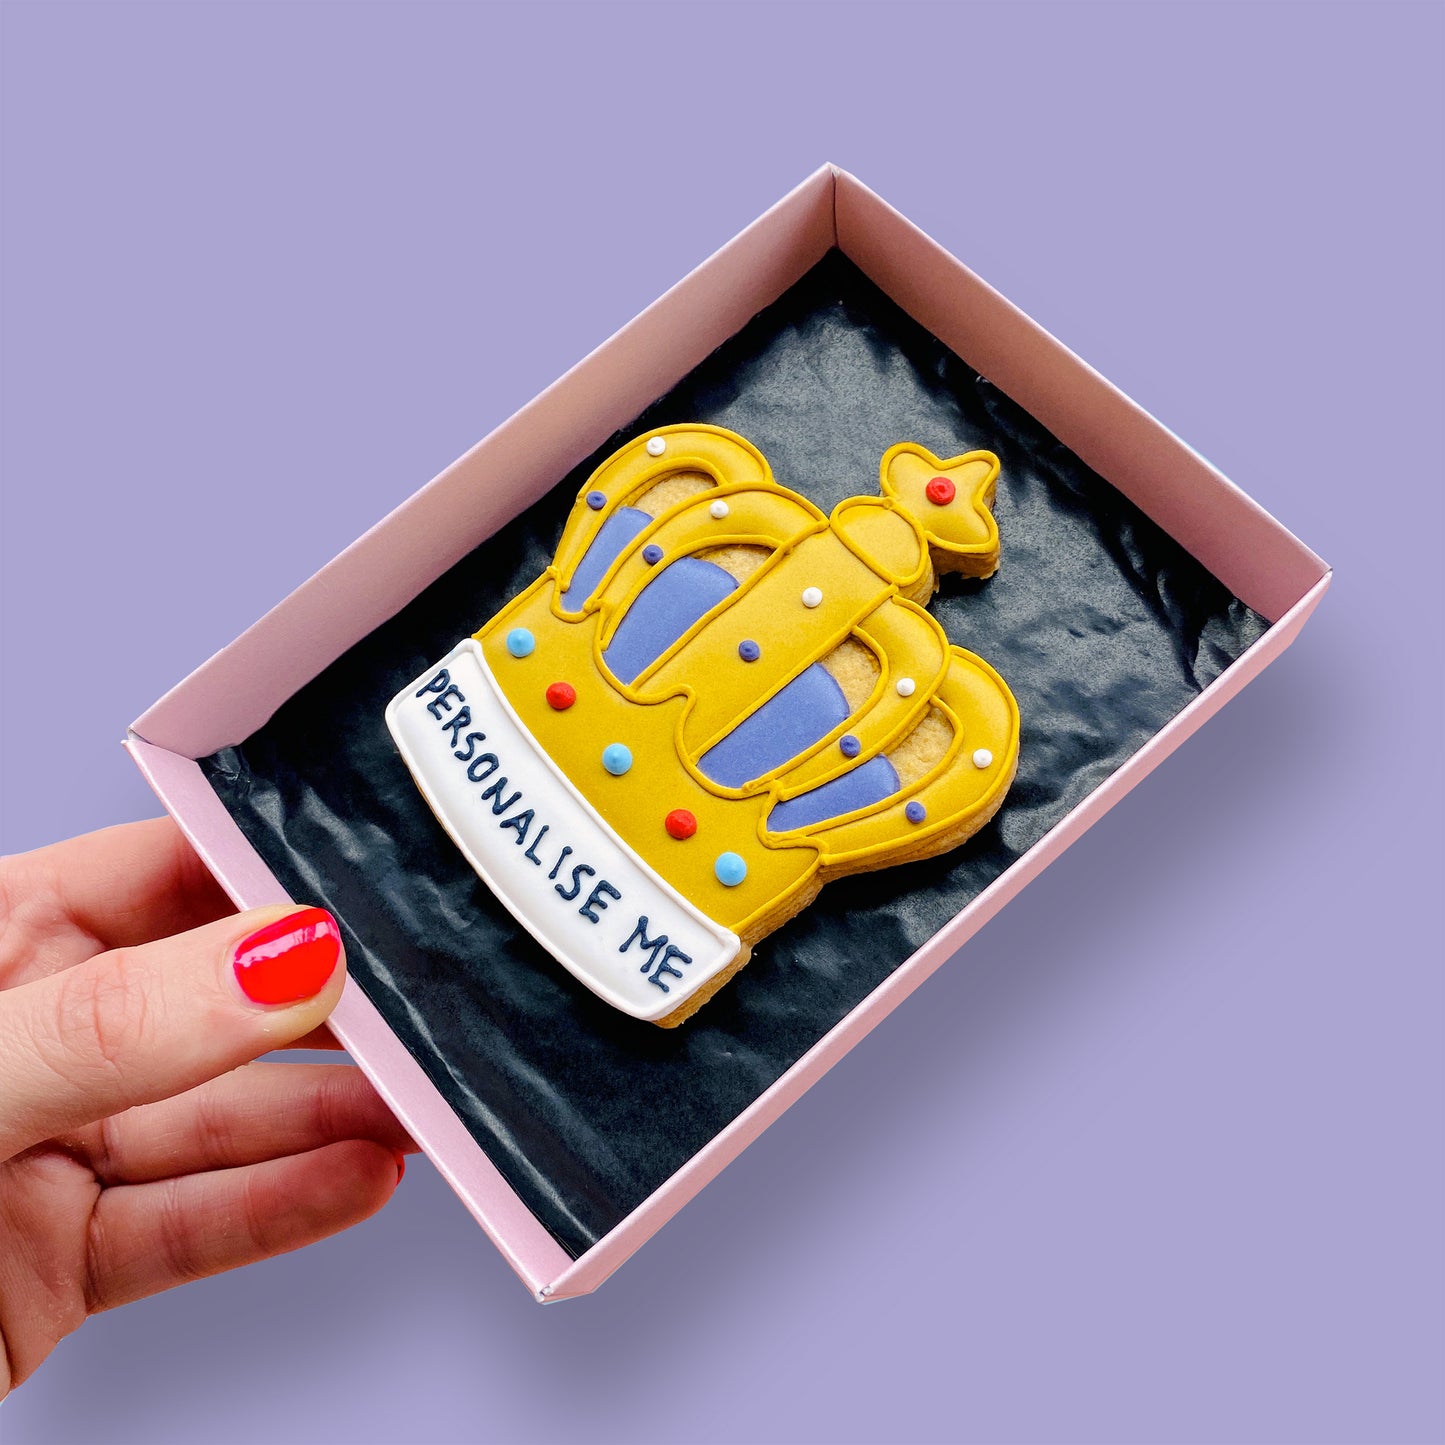 Personalised Crown Letterbox Cookie